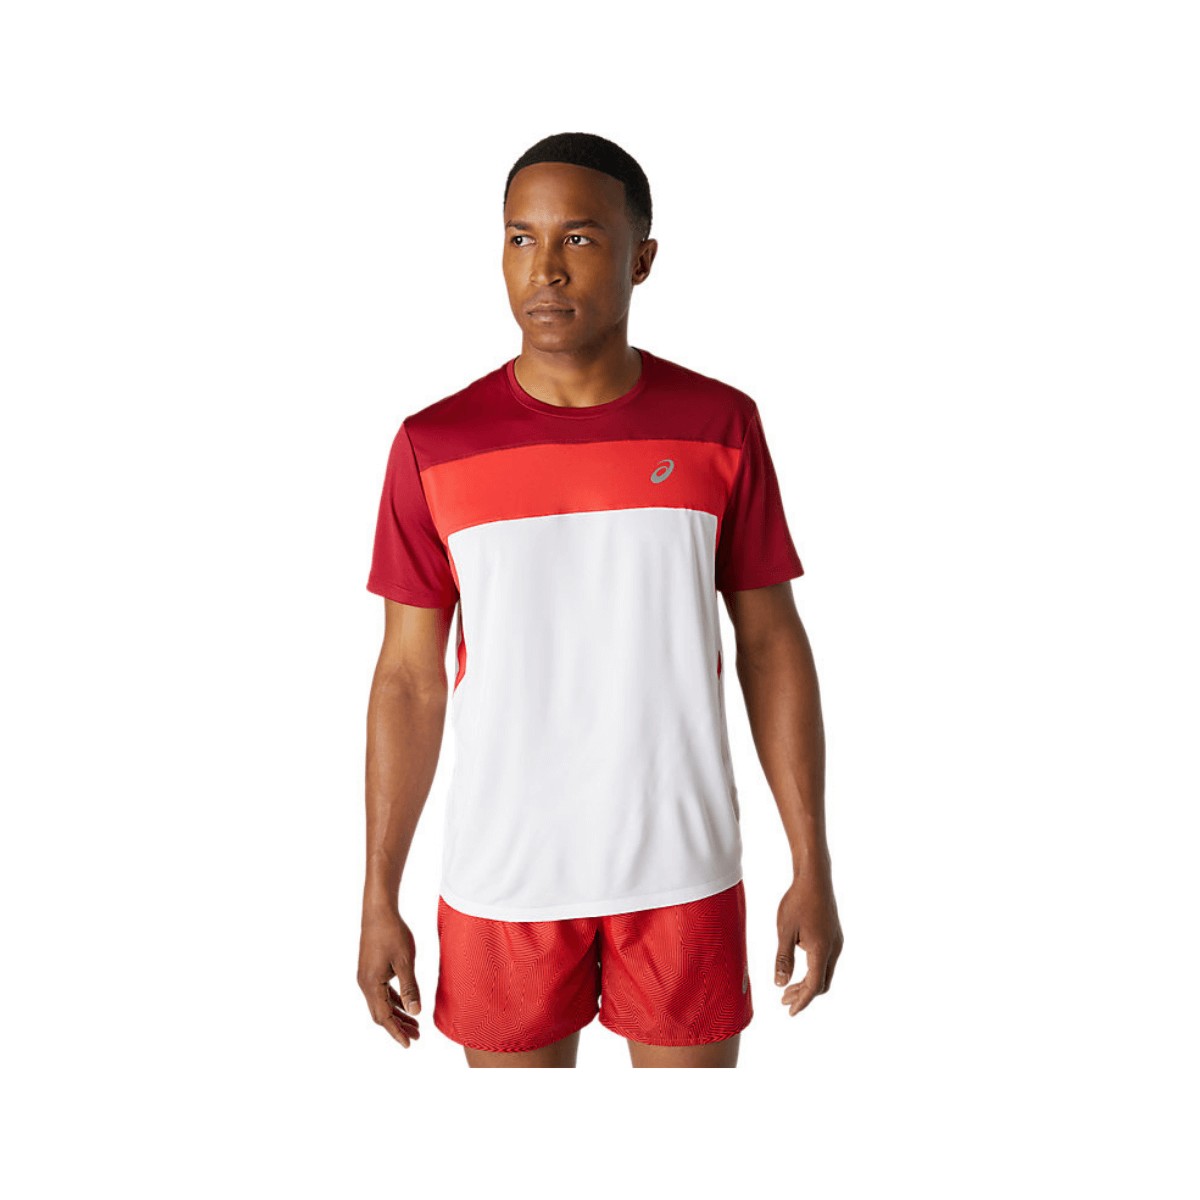 Asics Race SS Kurzarm T-Shirt Granat Rot Weiß AW21, Größe XS